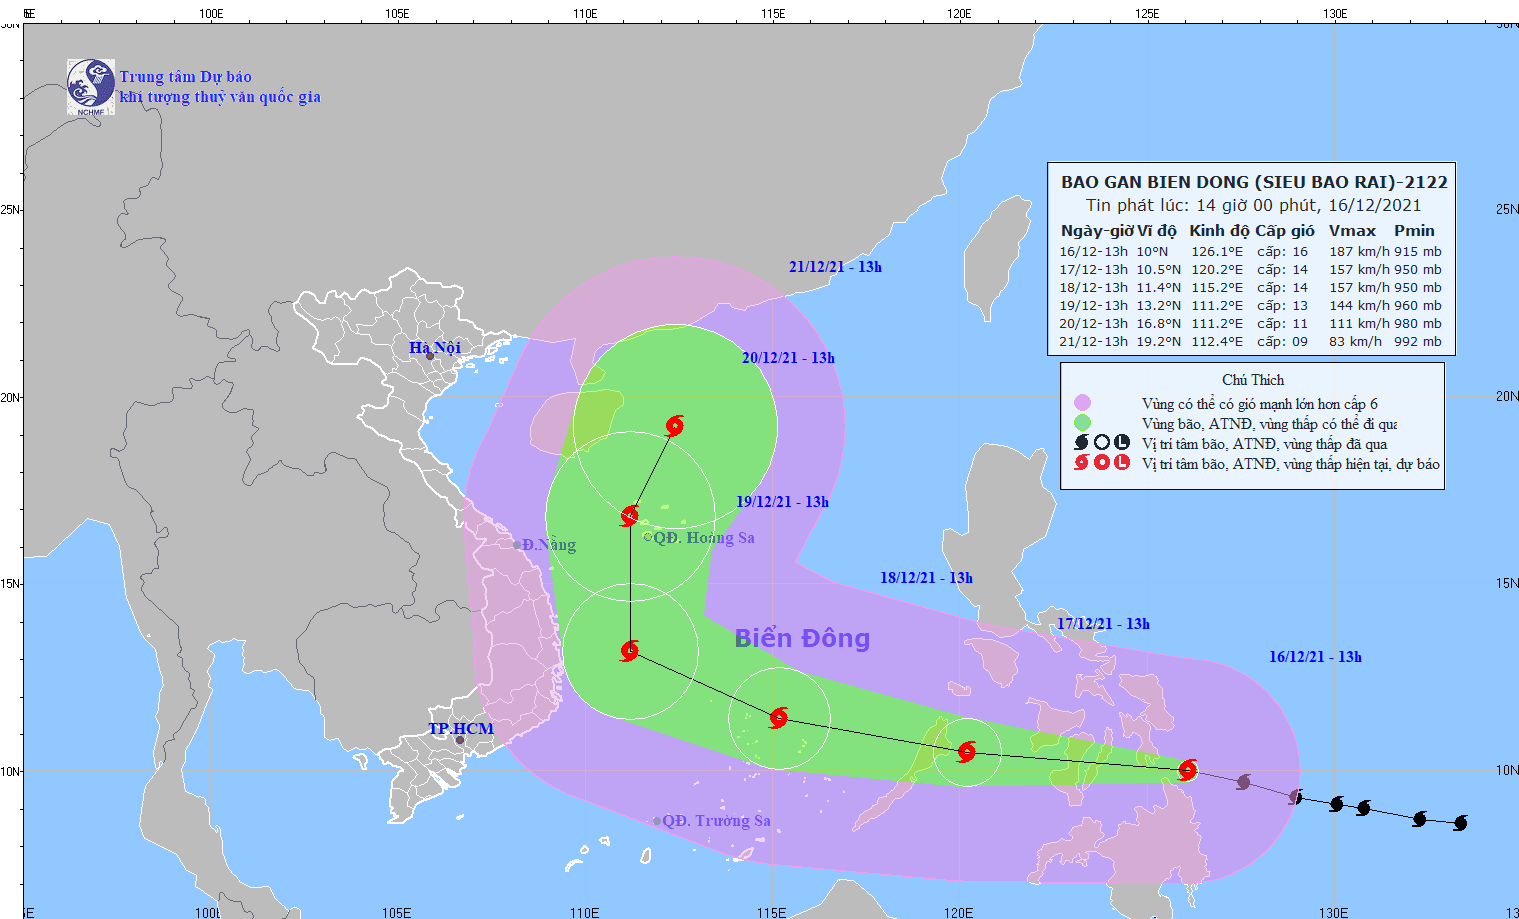 Chuyên gia dự báo trả lời câu hỏi: Siêu bão RAI có ảnh hưởng đến khu vực miền Trung của Việt Nam hay không? - Ảnh 2.